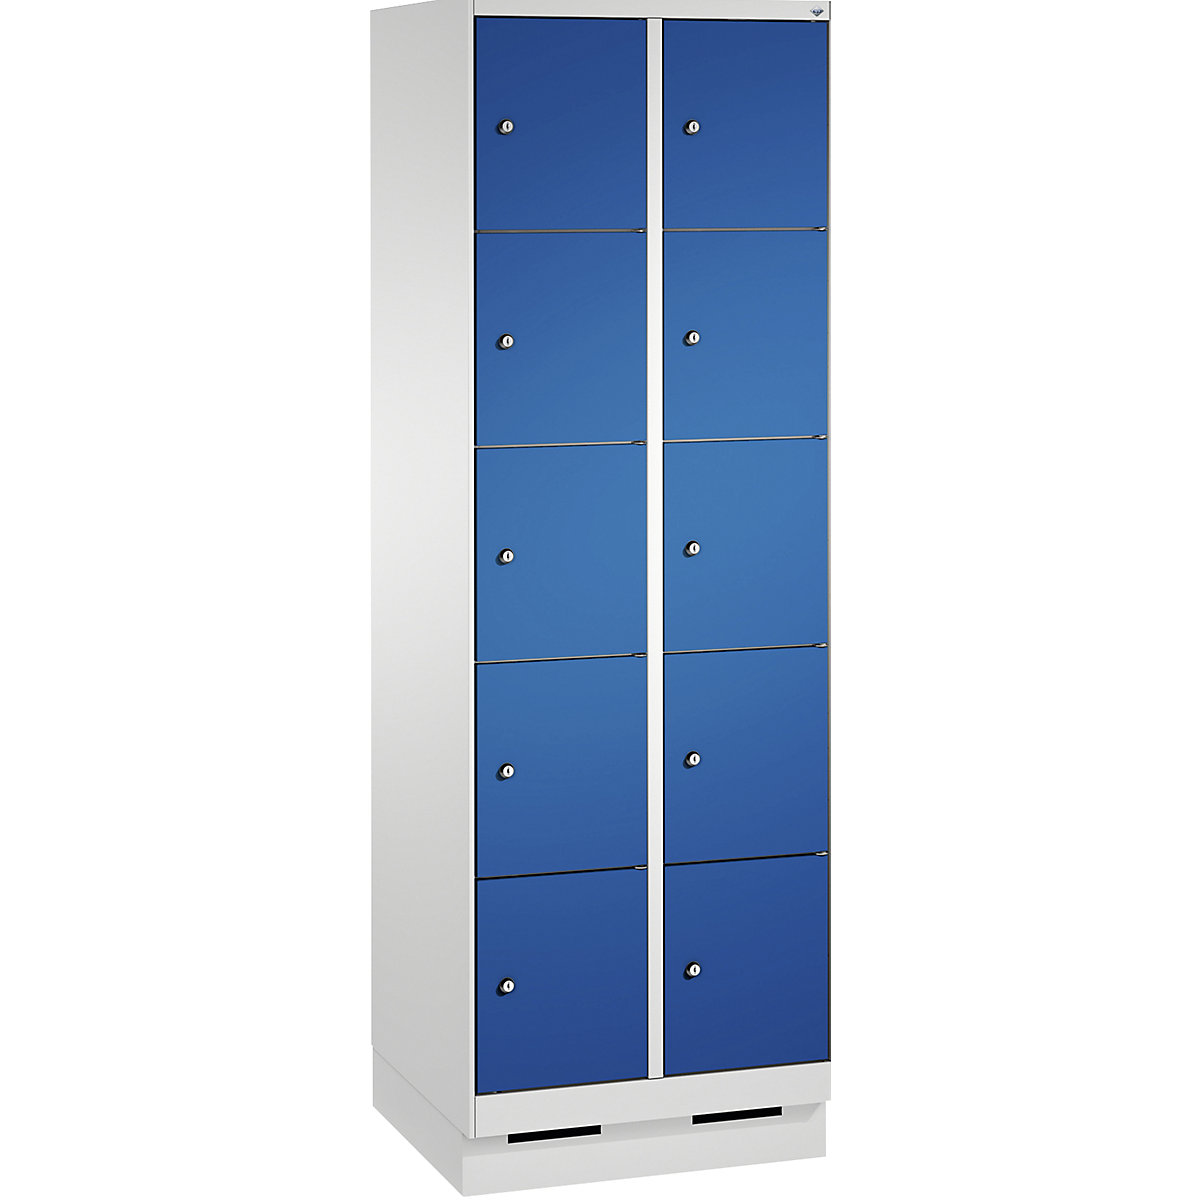 Armoire à casiers sur socle EVOLO – C+P, 2 compartiments, 5 casiers chacun, largeur compartiments 300 mm, gris clair / bleu gentiane-8